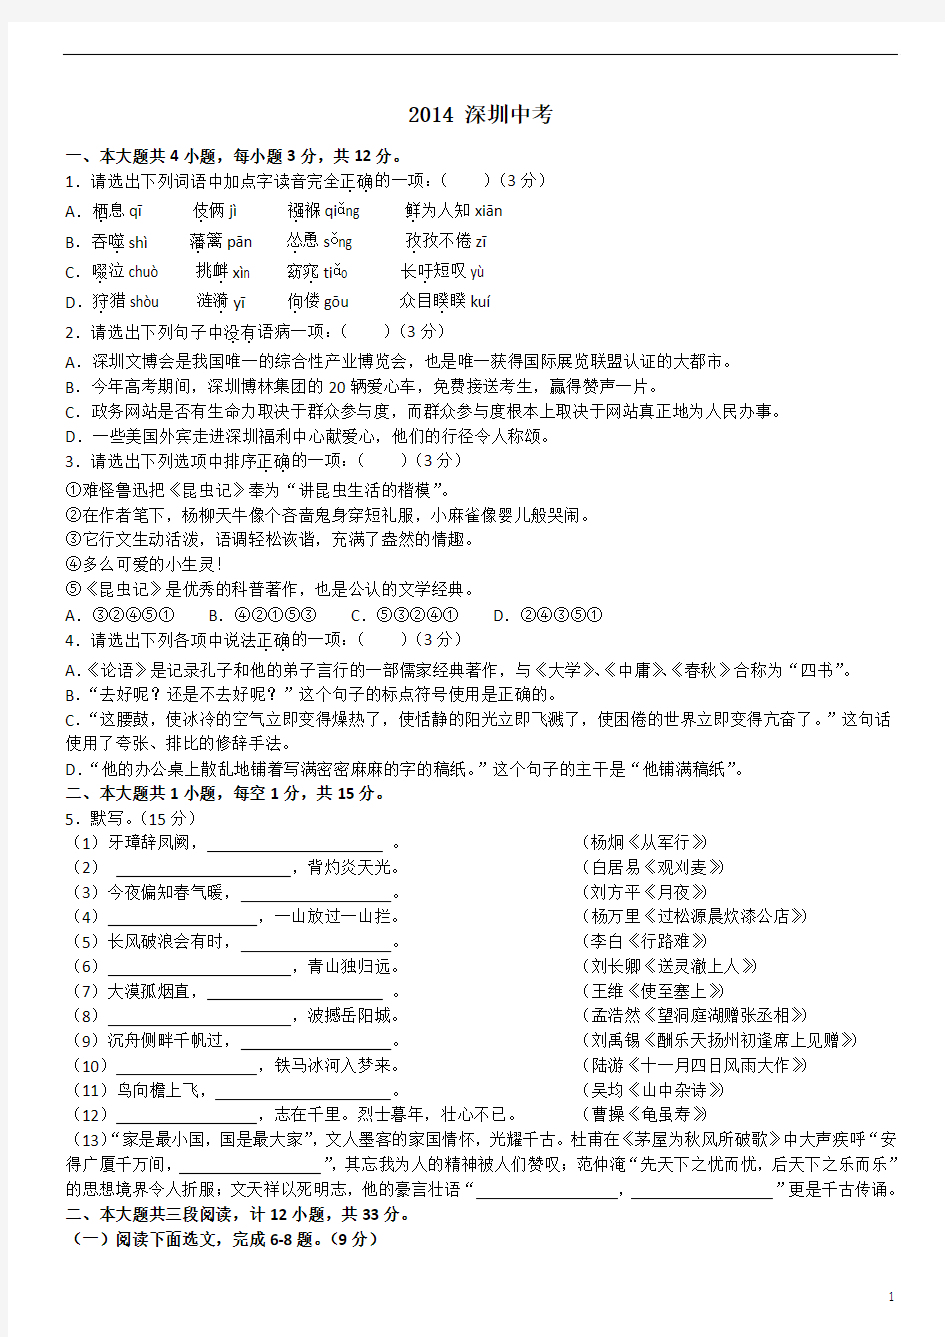 深圳2014年语文中考试卷及阅读答案